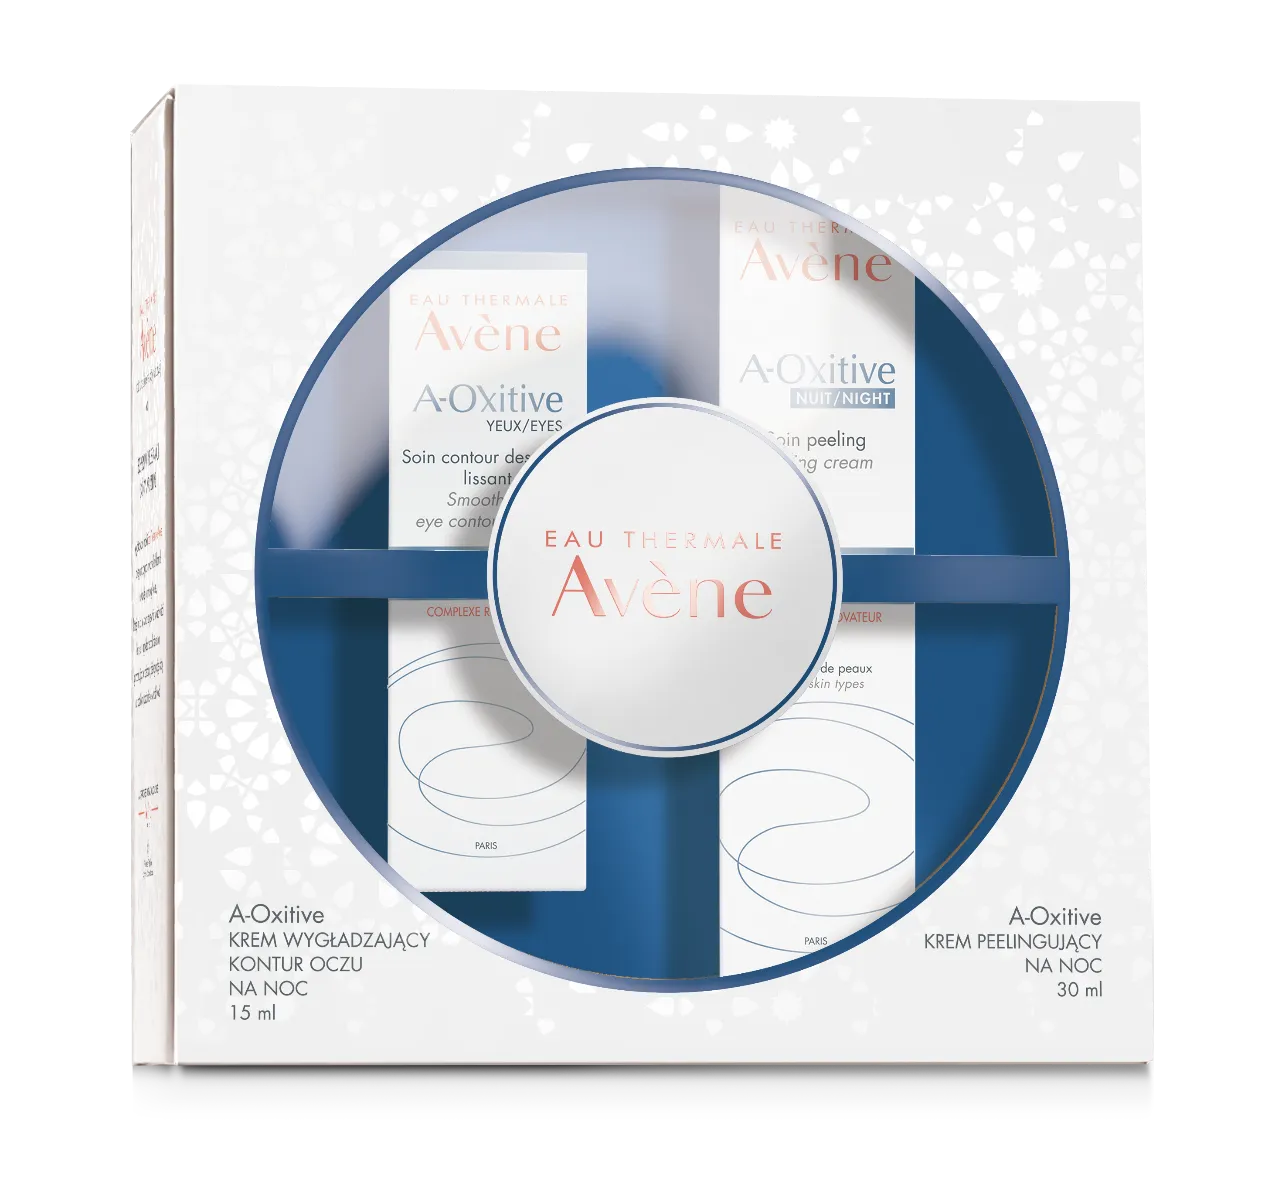 Avene A-Oxitiv NOC zestaw : krem peelingujący + krem wygładzający kontur oczu, 30 ml + 15 ml